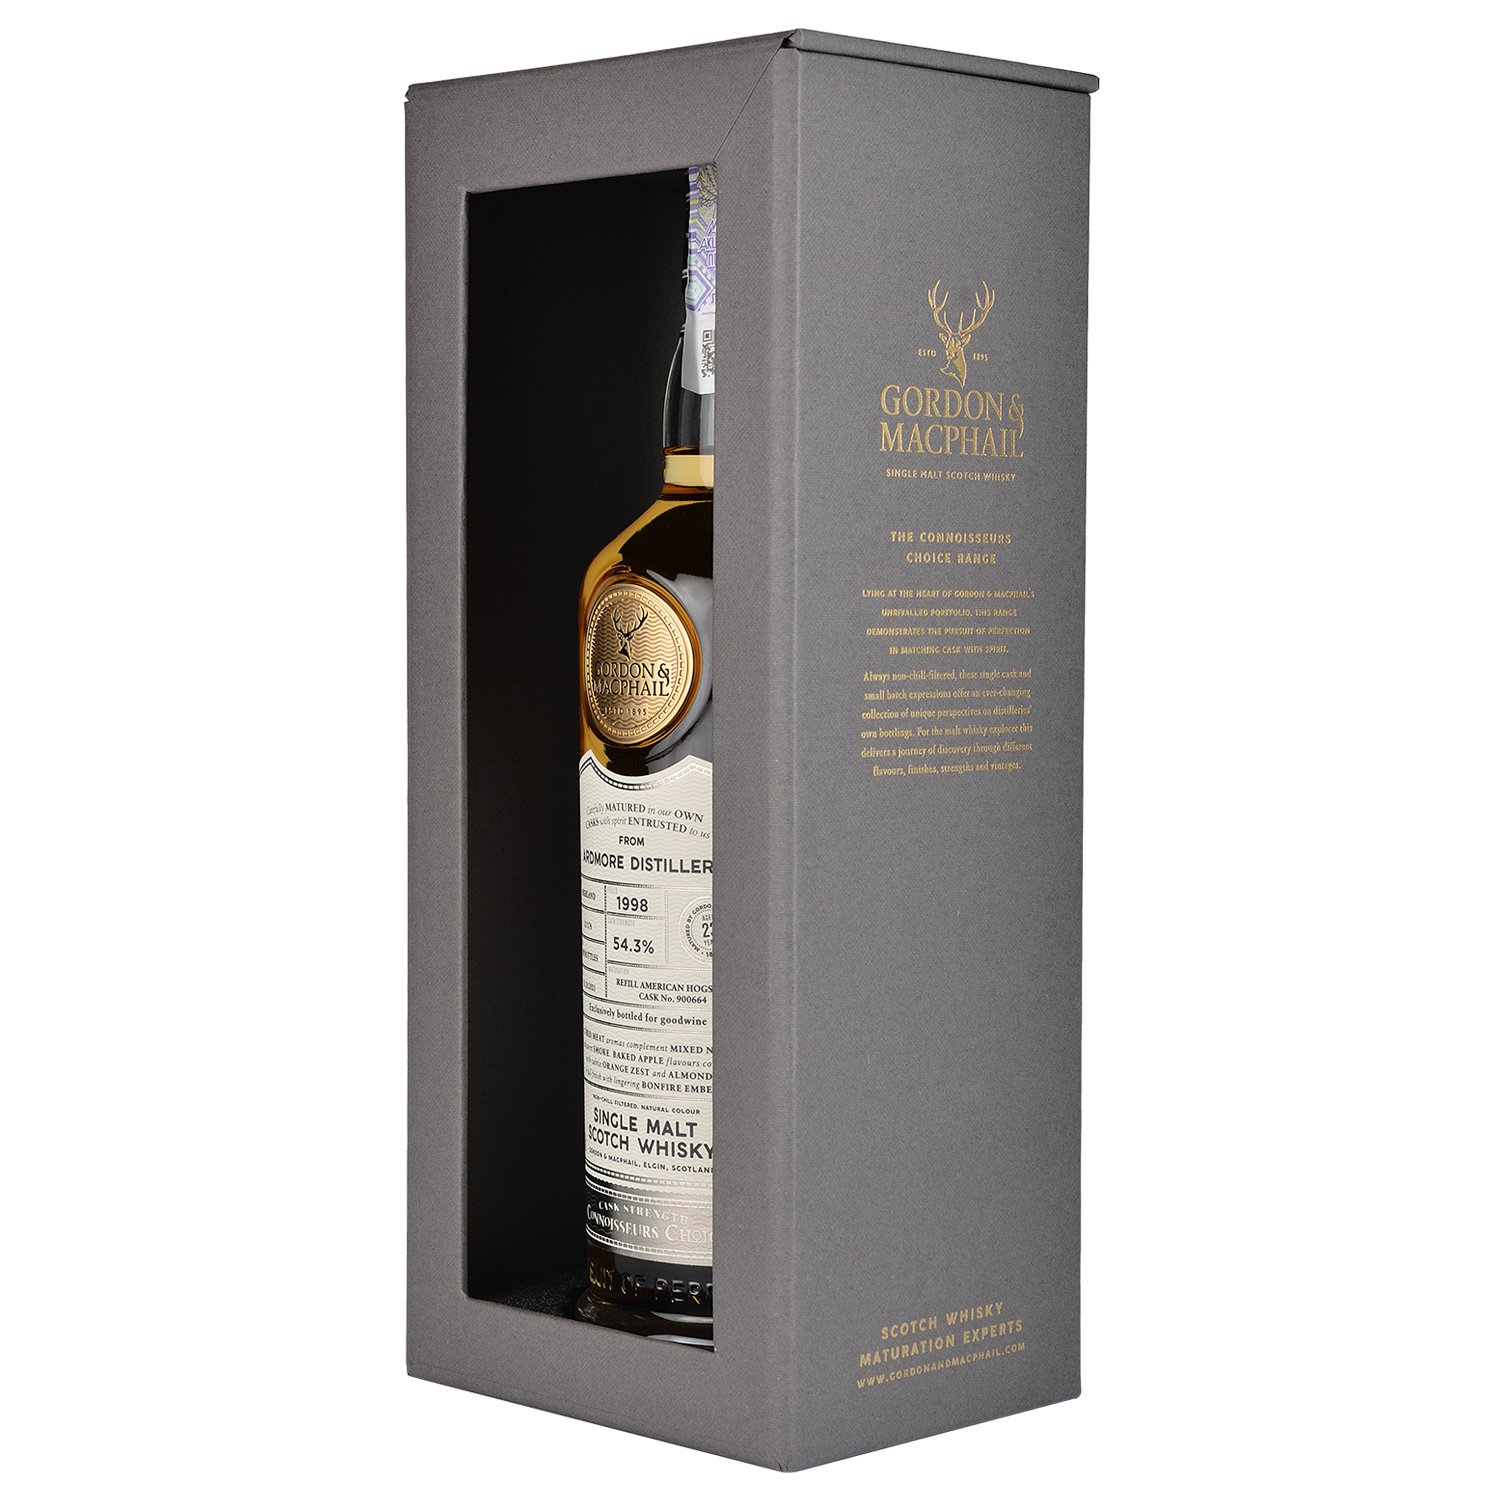 Виски Gordon&MacPhail Ardmore Connoisseurs Choice 1998 Batch 21/176 Single Malt Scotch Whisky, в подарочной упаковке, 54,3%, 0,7 л - фото 2